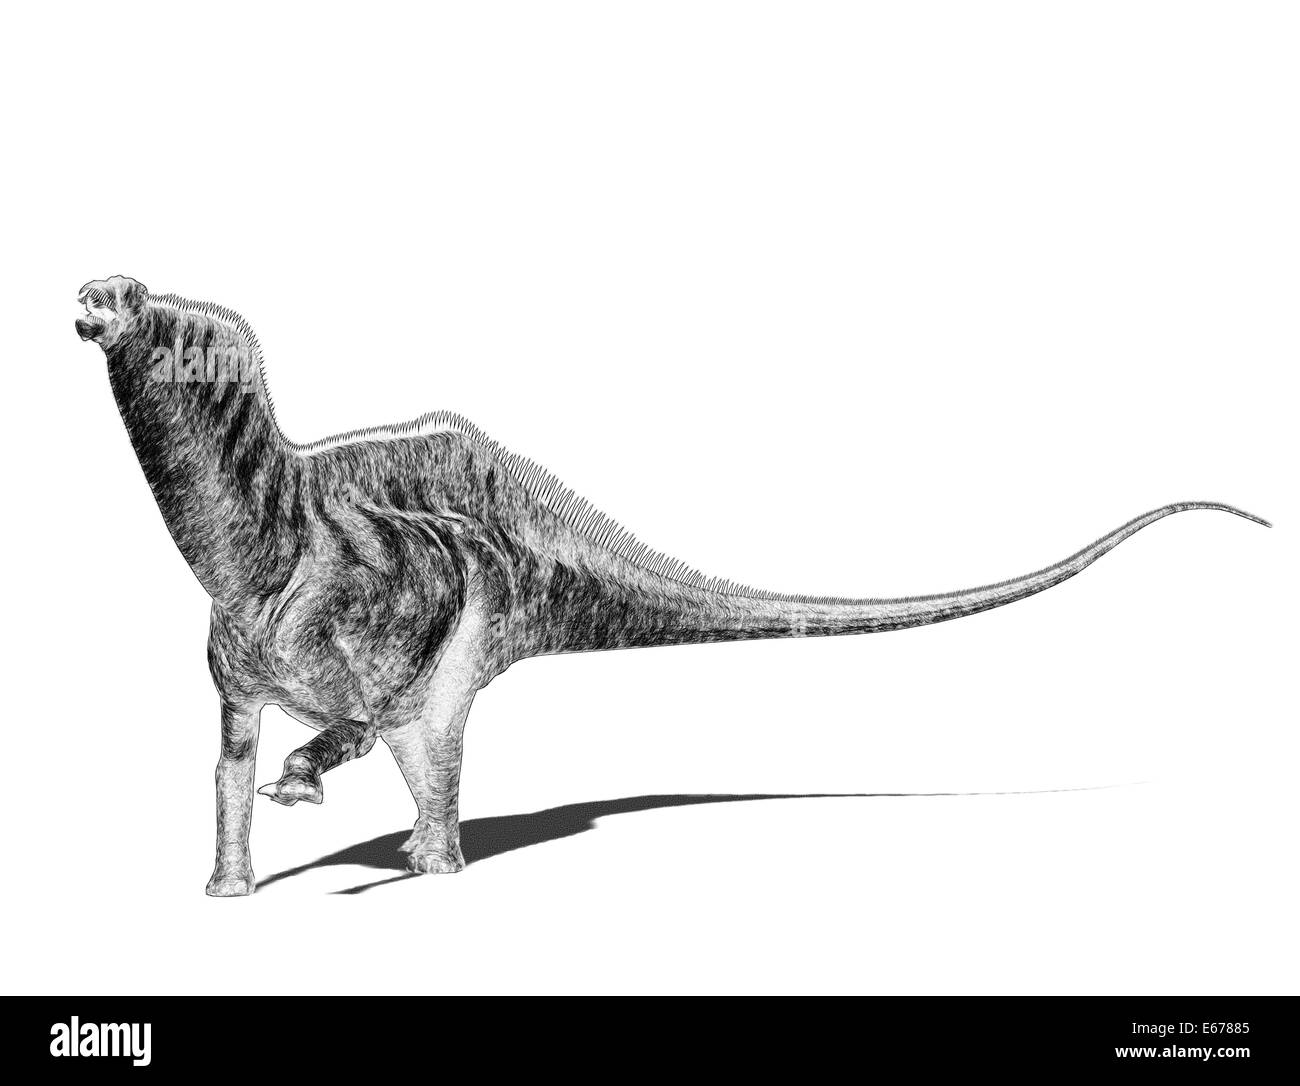 Dinosaurier Amargasaurus / Amargasaurus dinosauro Foto Stock